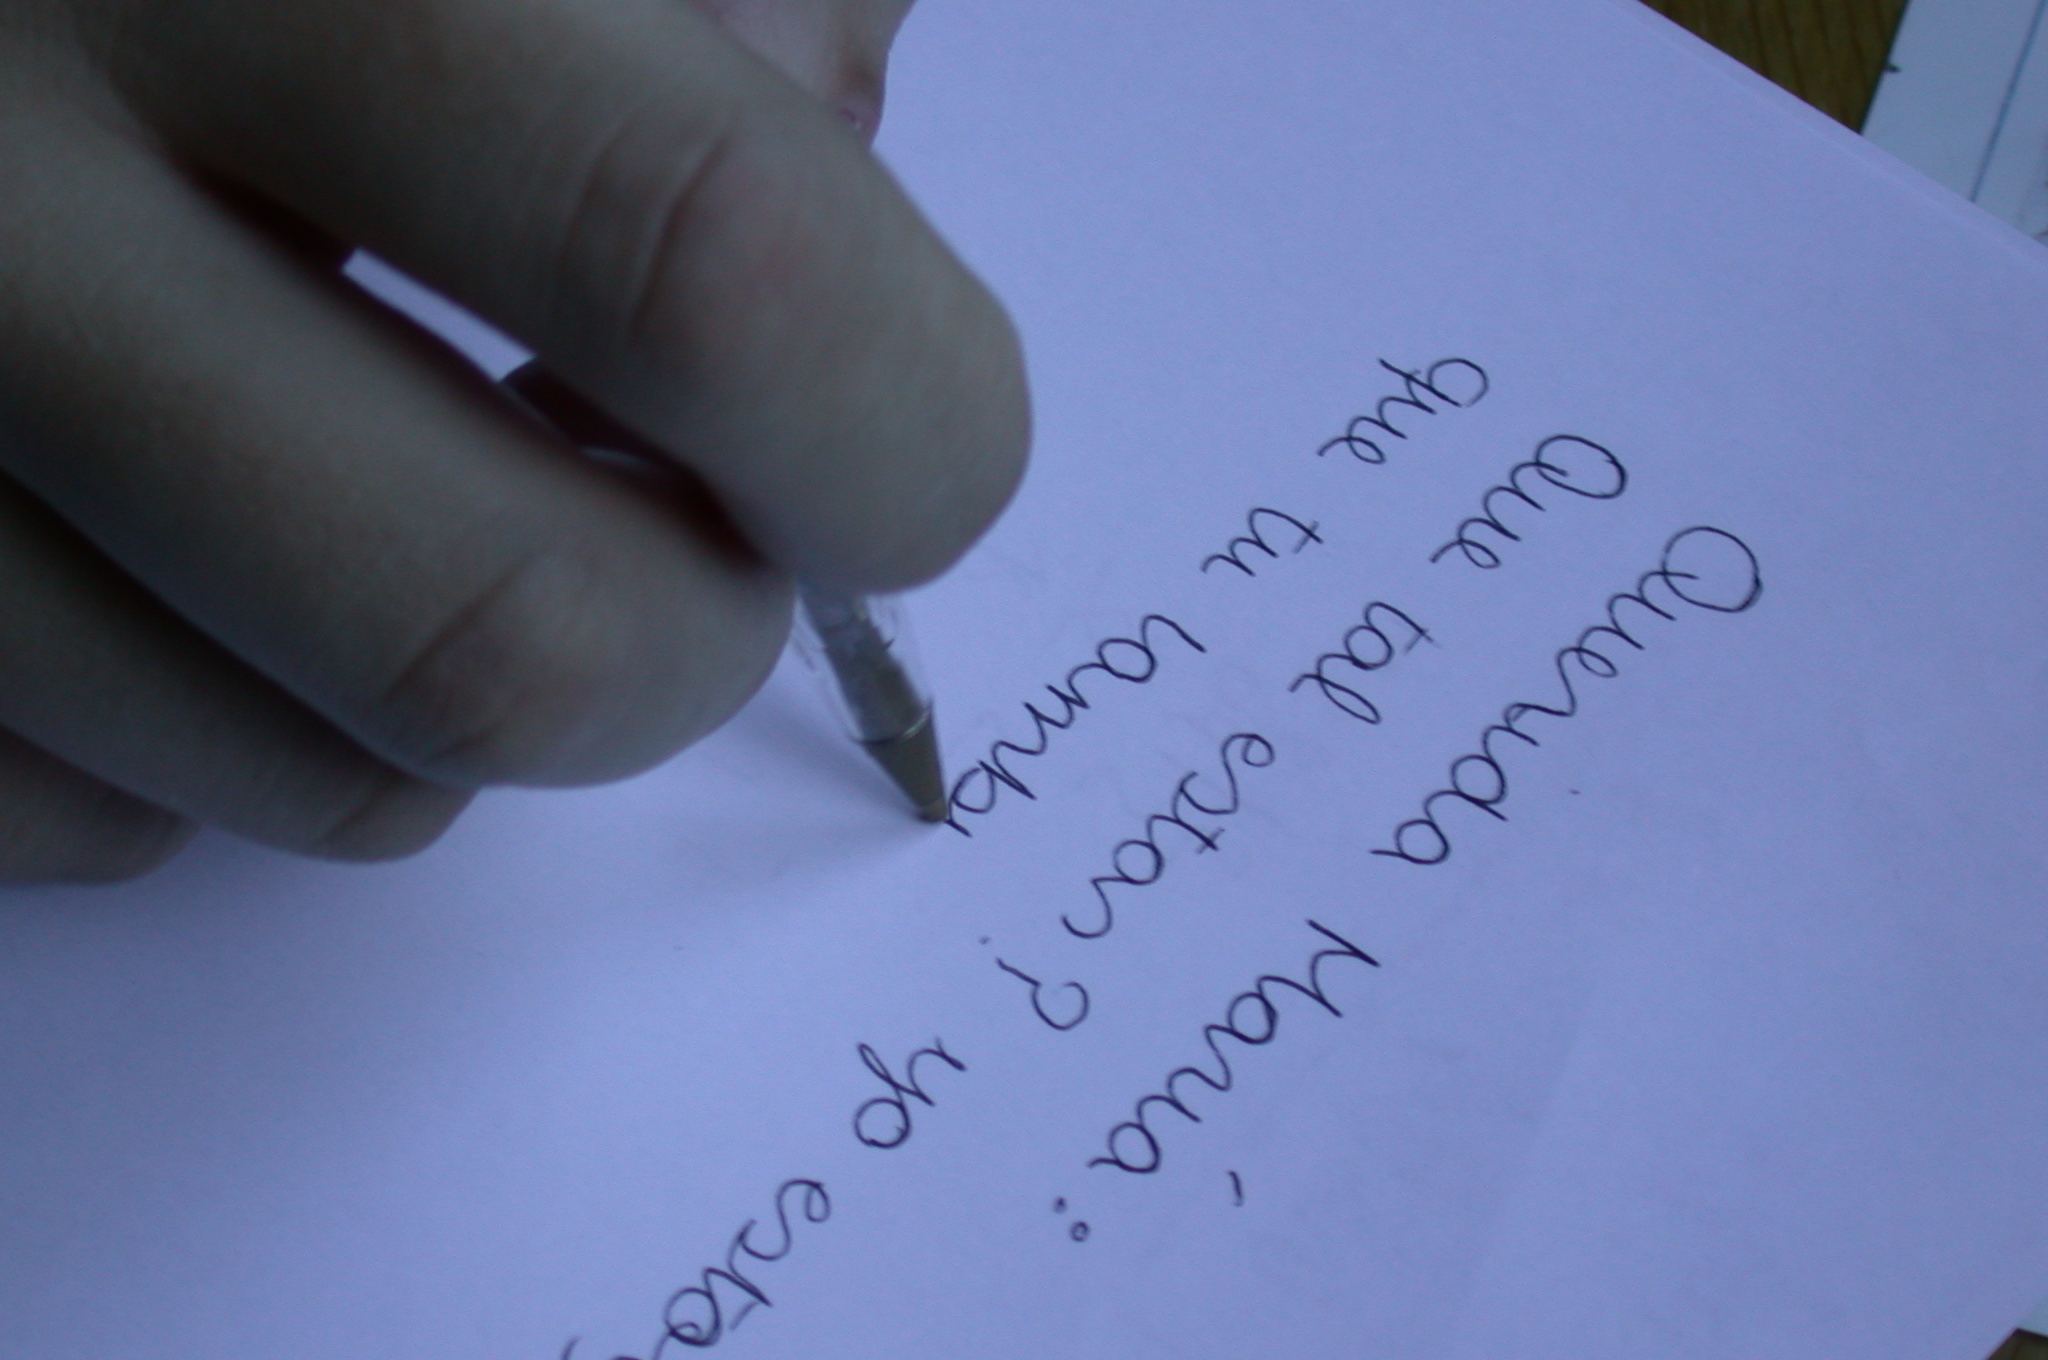 Esta imagen muestra una mano con un bolígrafo que escribe sobre un cuaderno